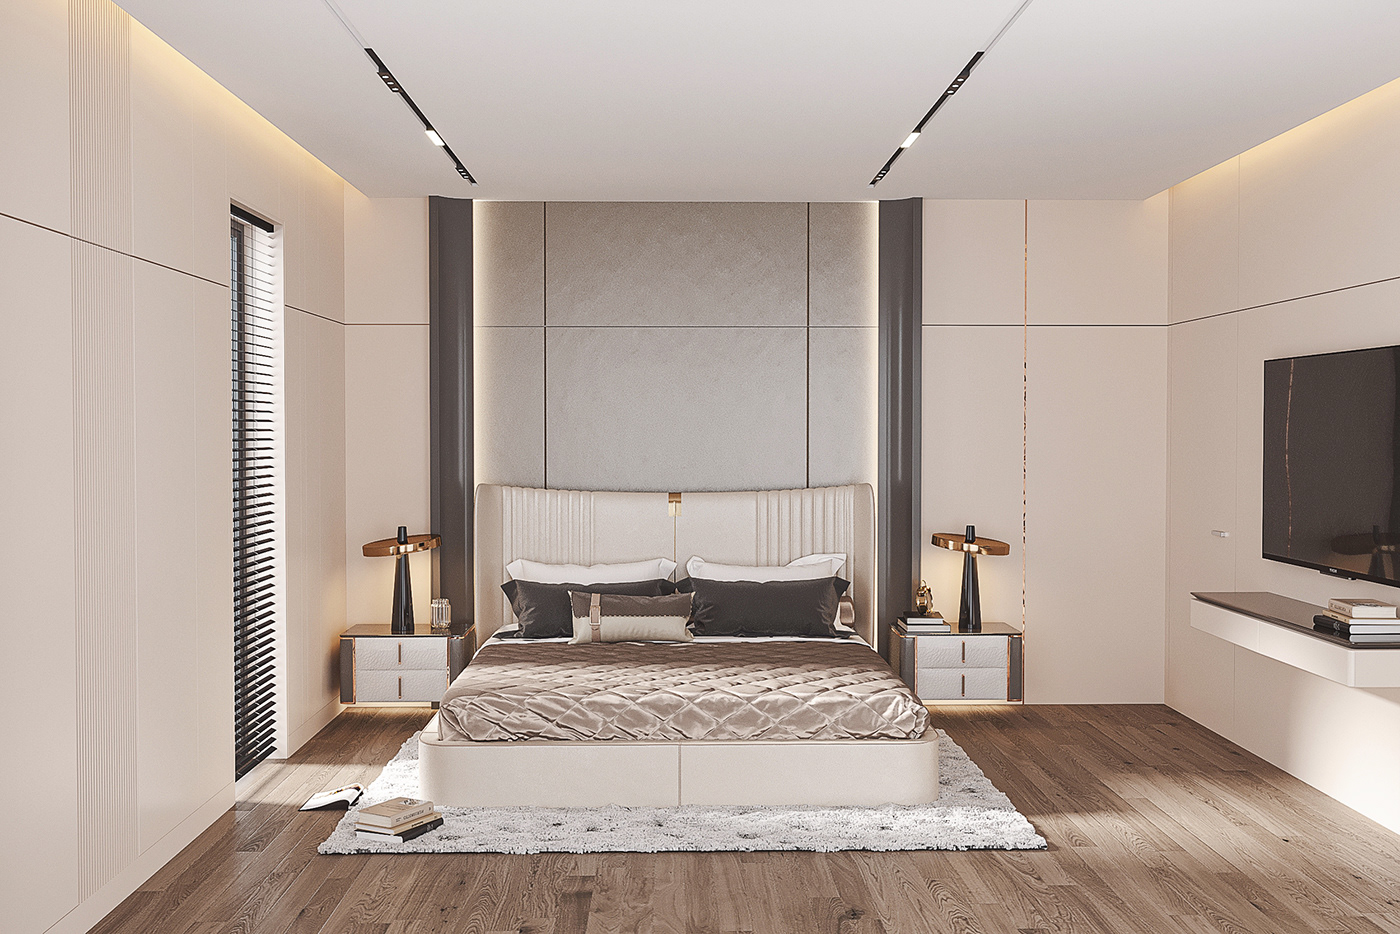 modernliving luxuryliving 3ds max CoronaRender  Render interior design  germandesign minimalistdesign villaarchitecture ZenInteriors